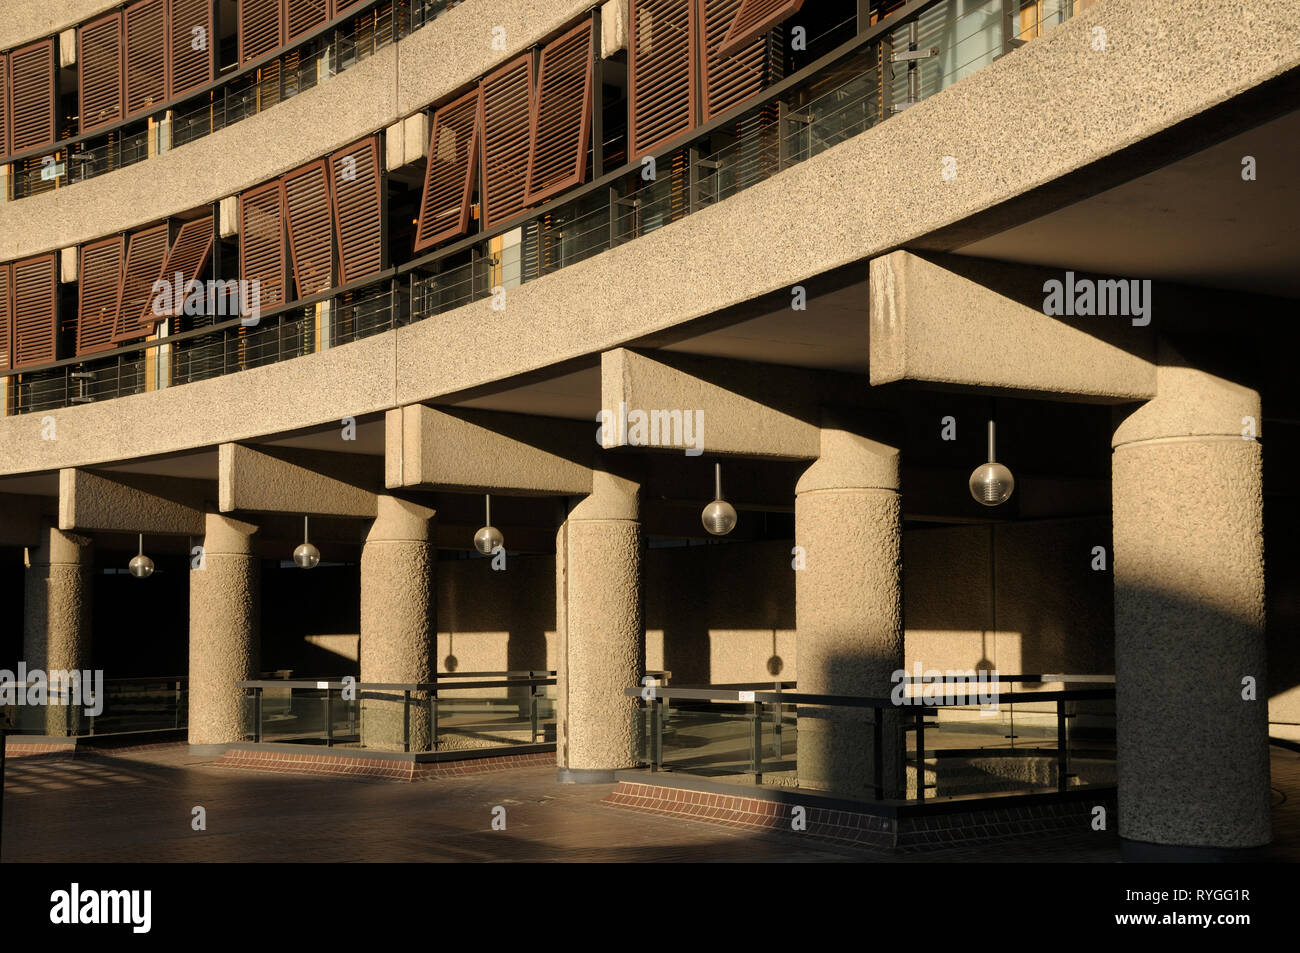 Détail architectural montrant le disque les lignes et les courbes de l'architecture brutaliste, Barbican Estate, London EC2, England, UK Banque D'Images